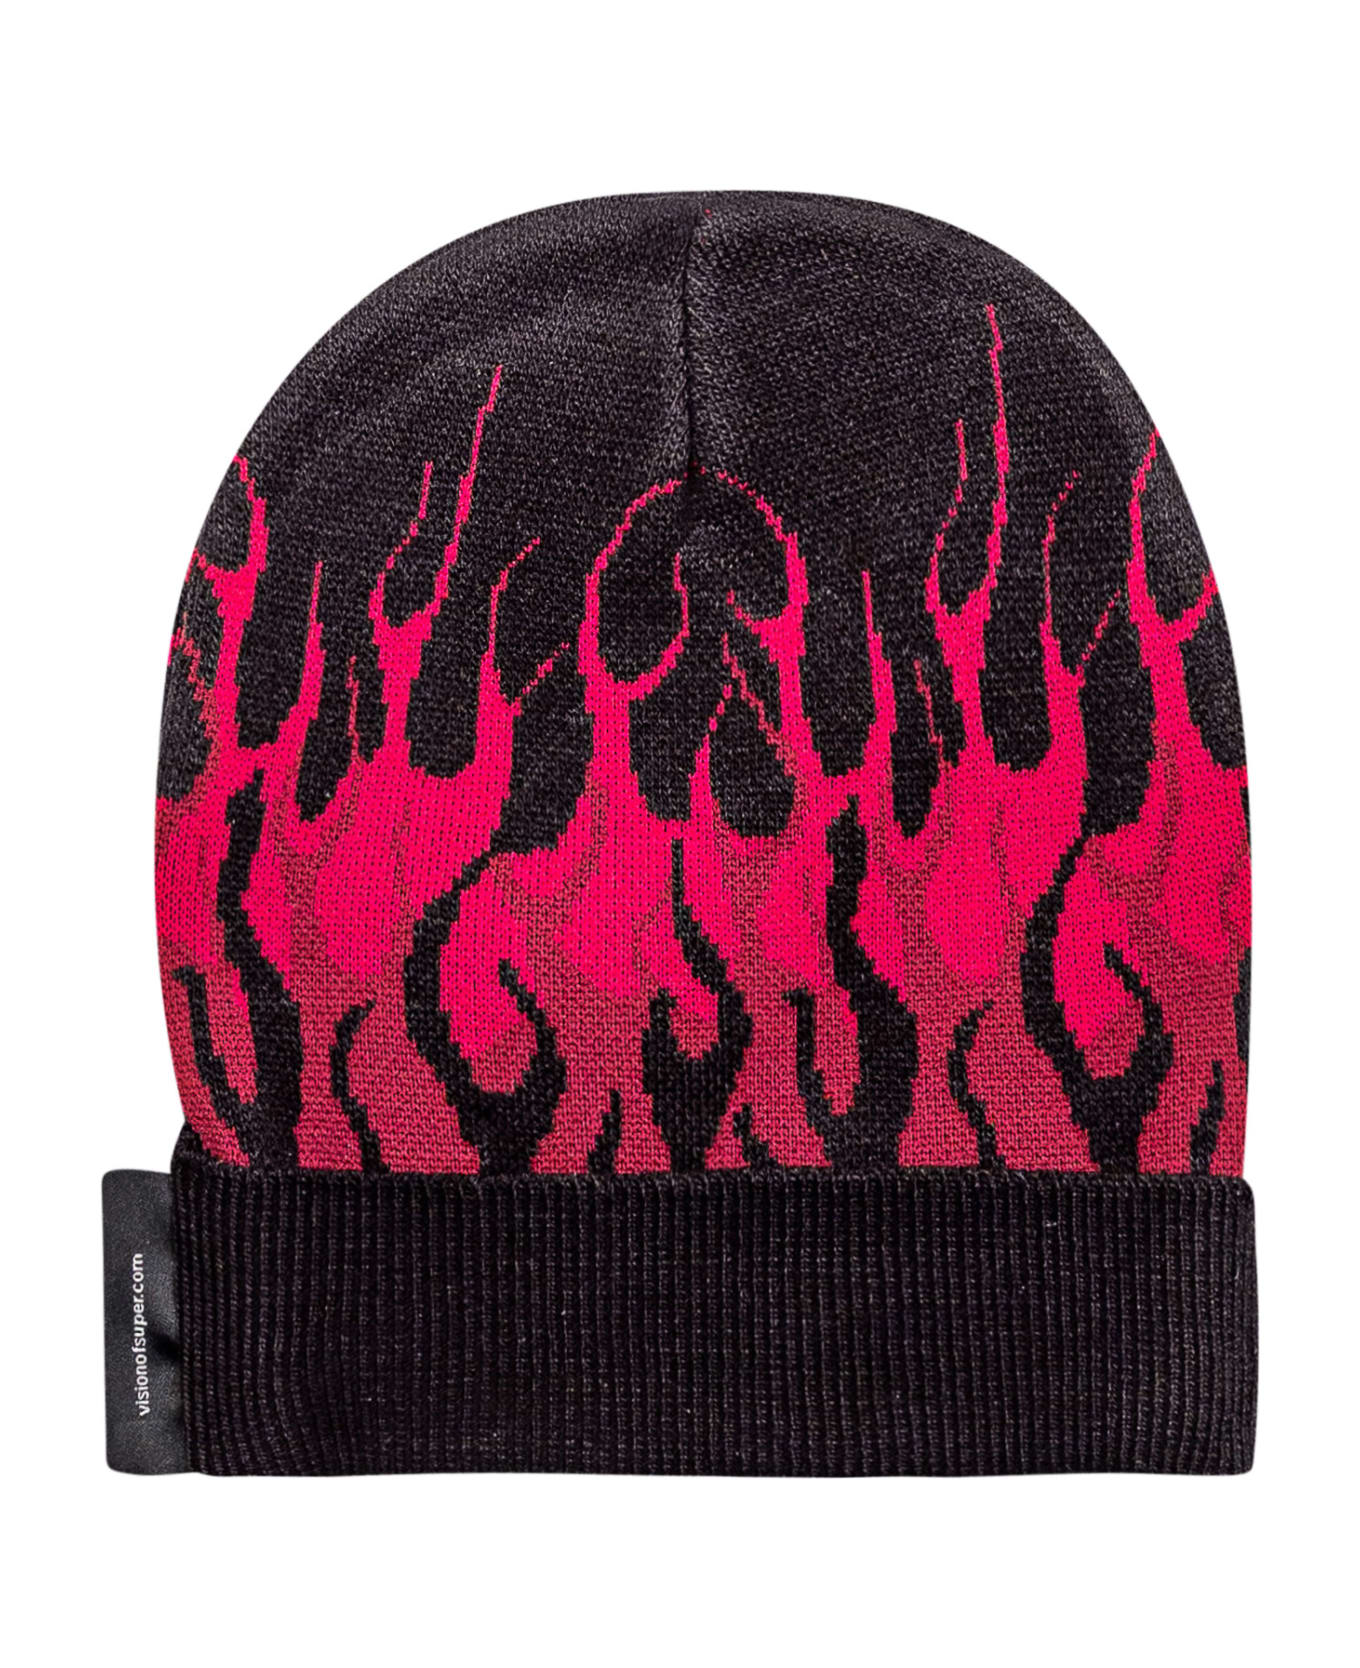 Vision of Super Flames Hat - BLACK